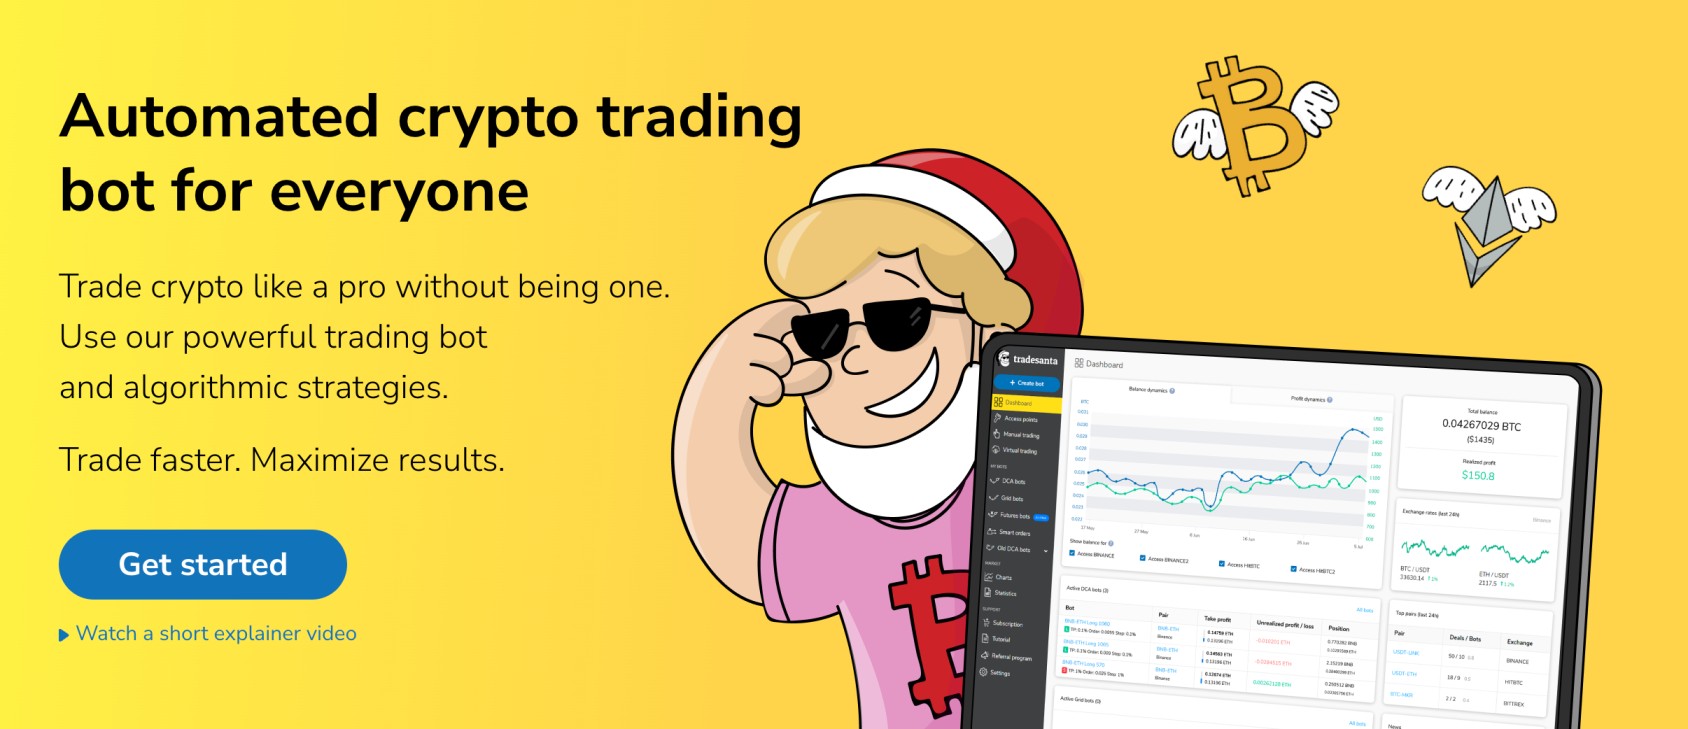 TradeSanta crypto trading bots